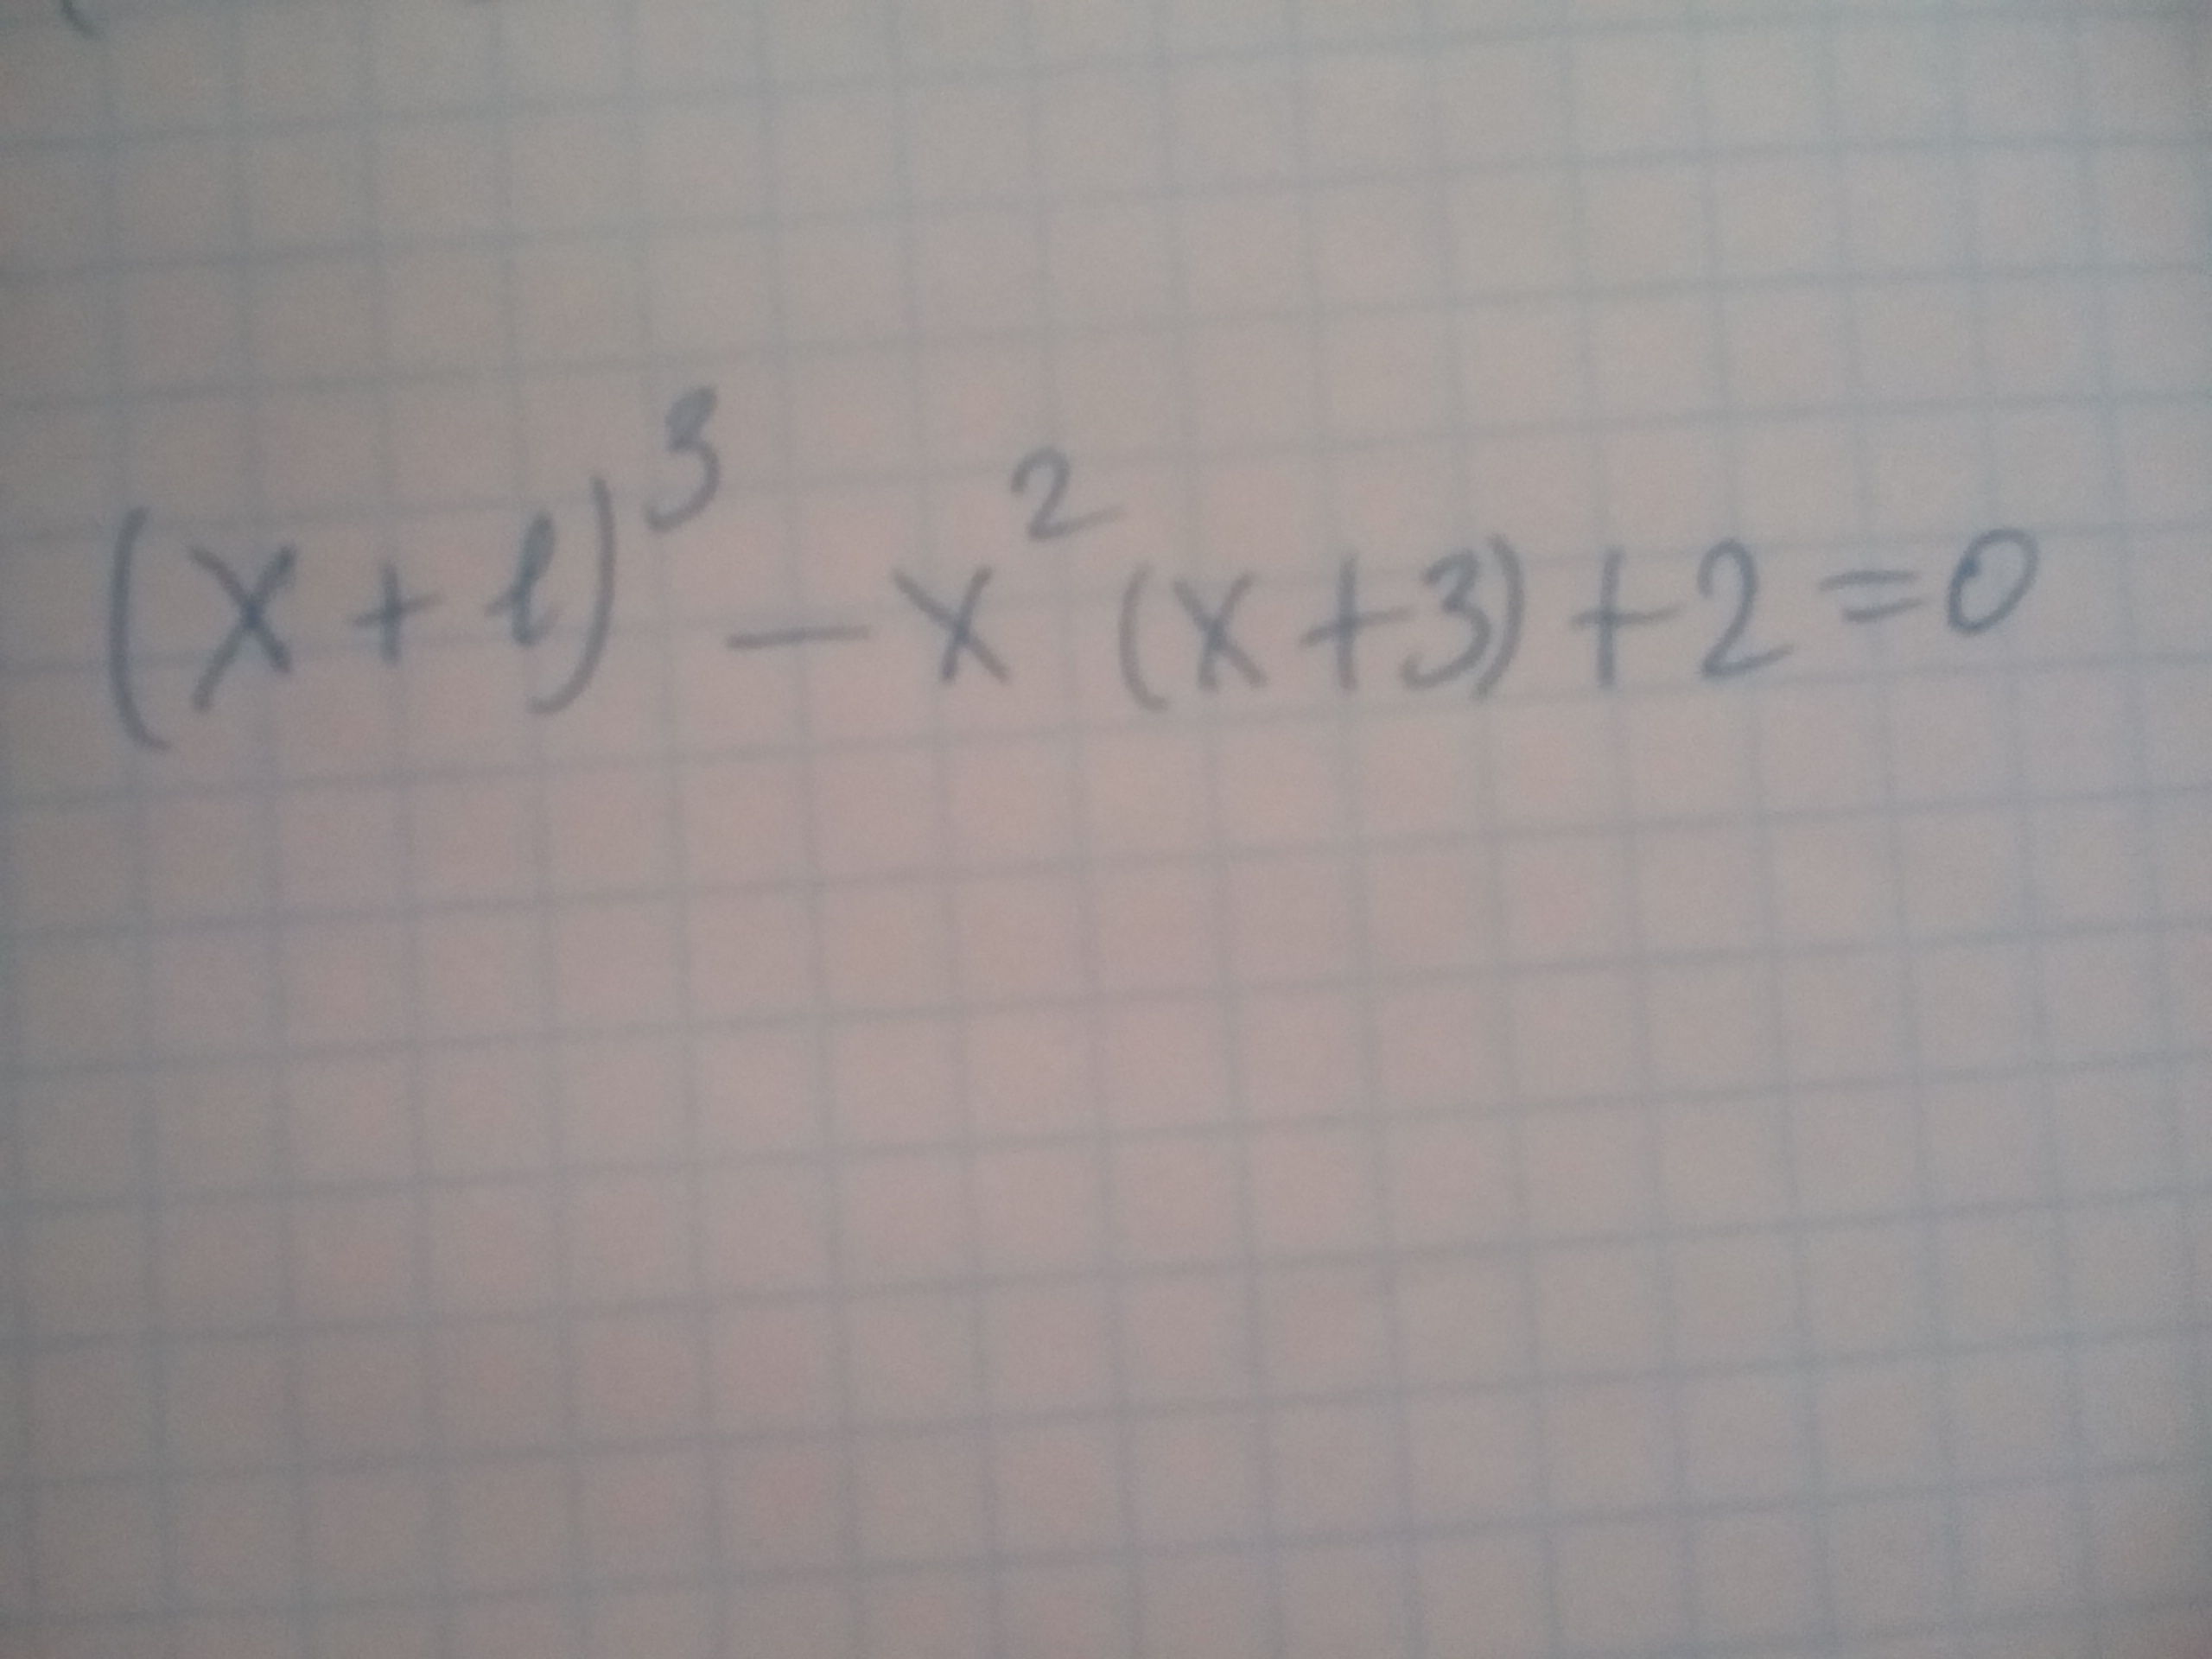 Решить уравнение и решить три примера 1) уравнение 2) примеры?